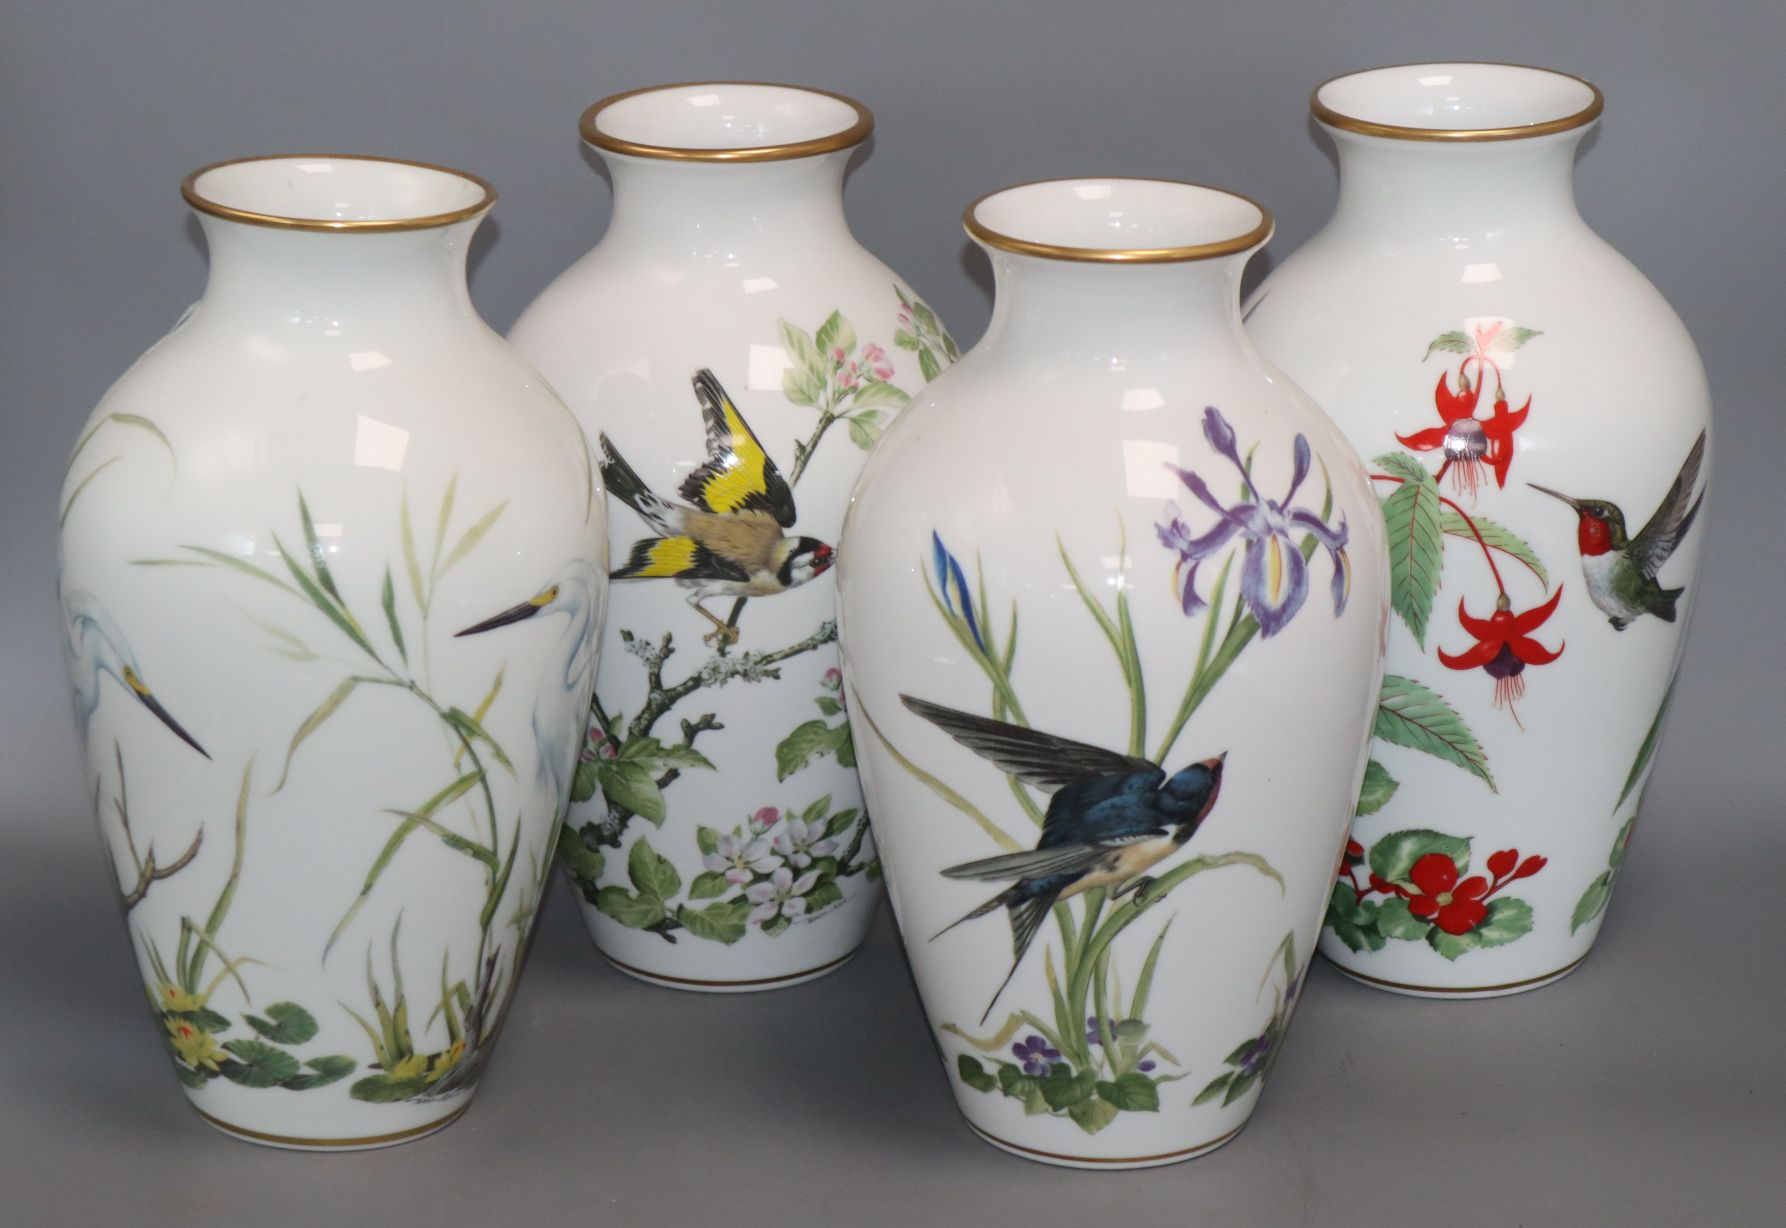 A set of four Franklin porcelain bird vases